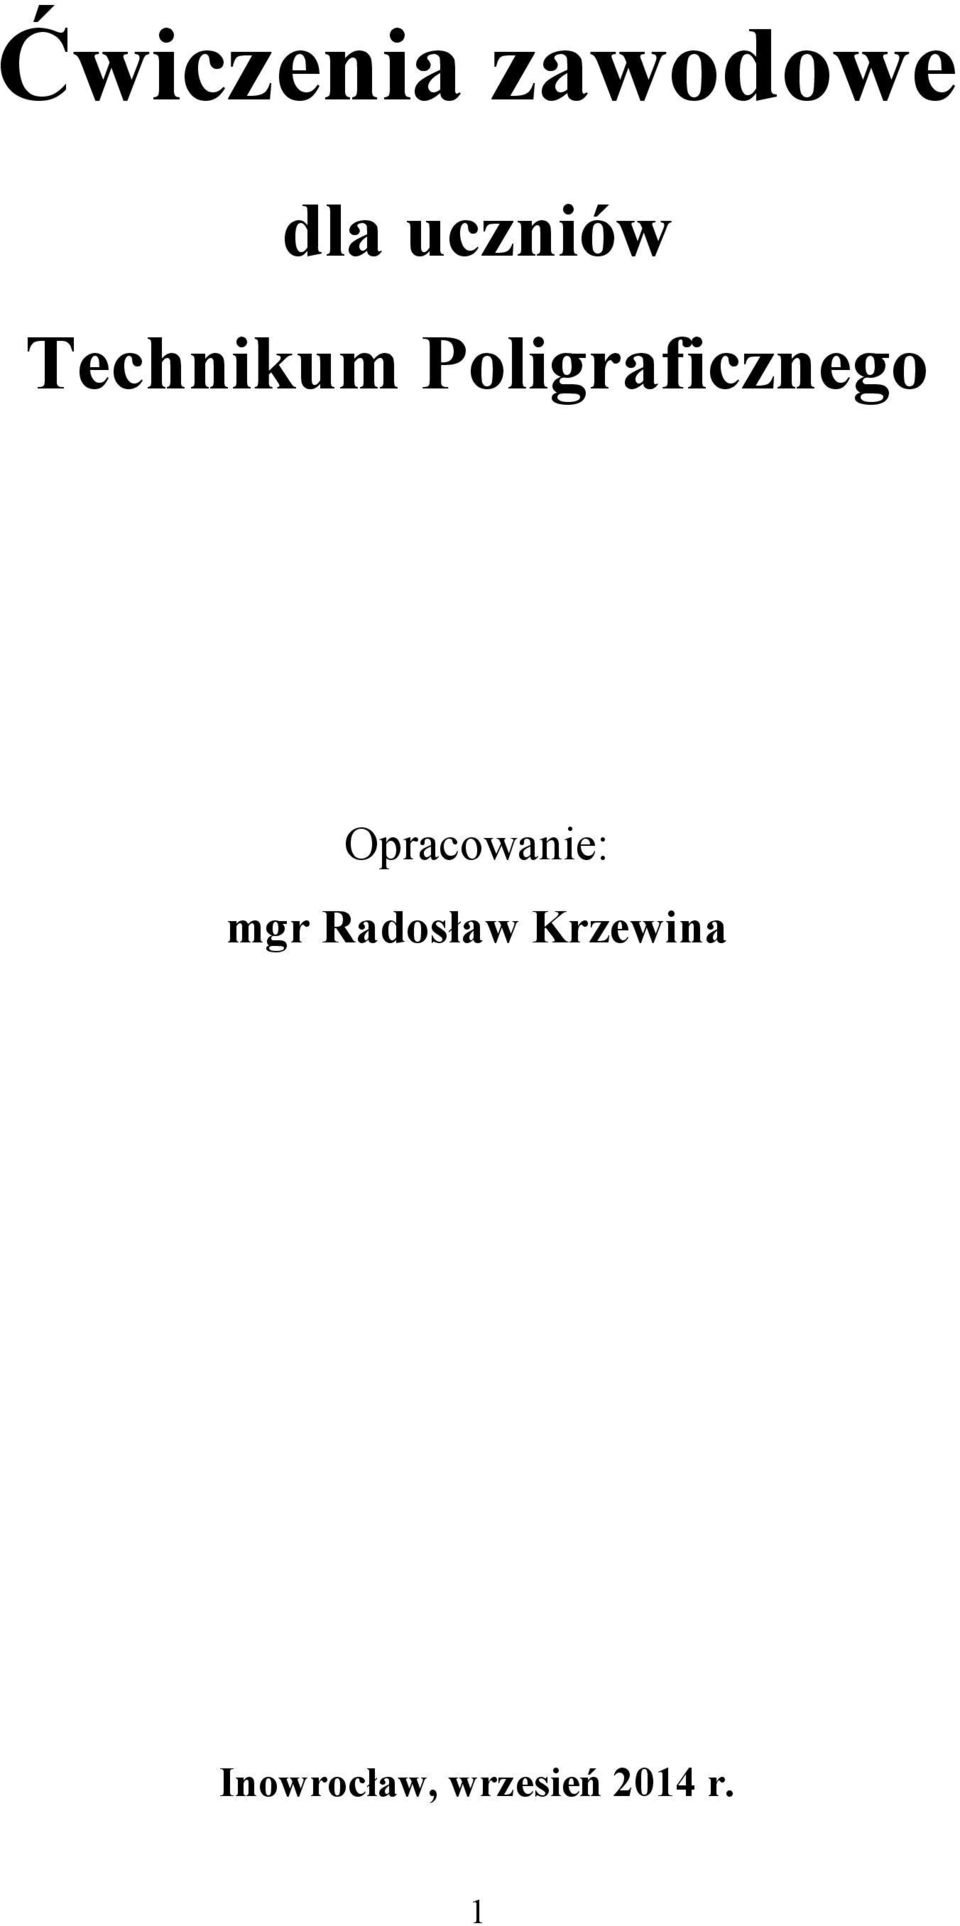 Opracowanie: mgr Radosław